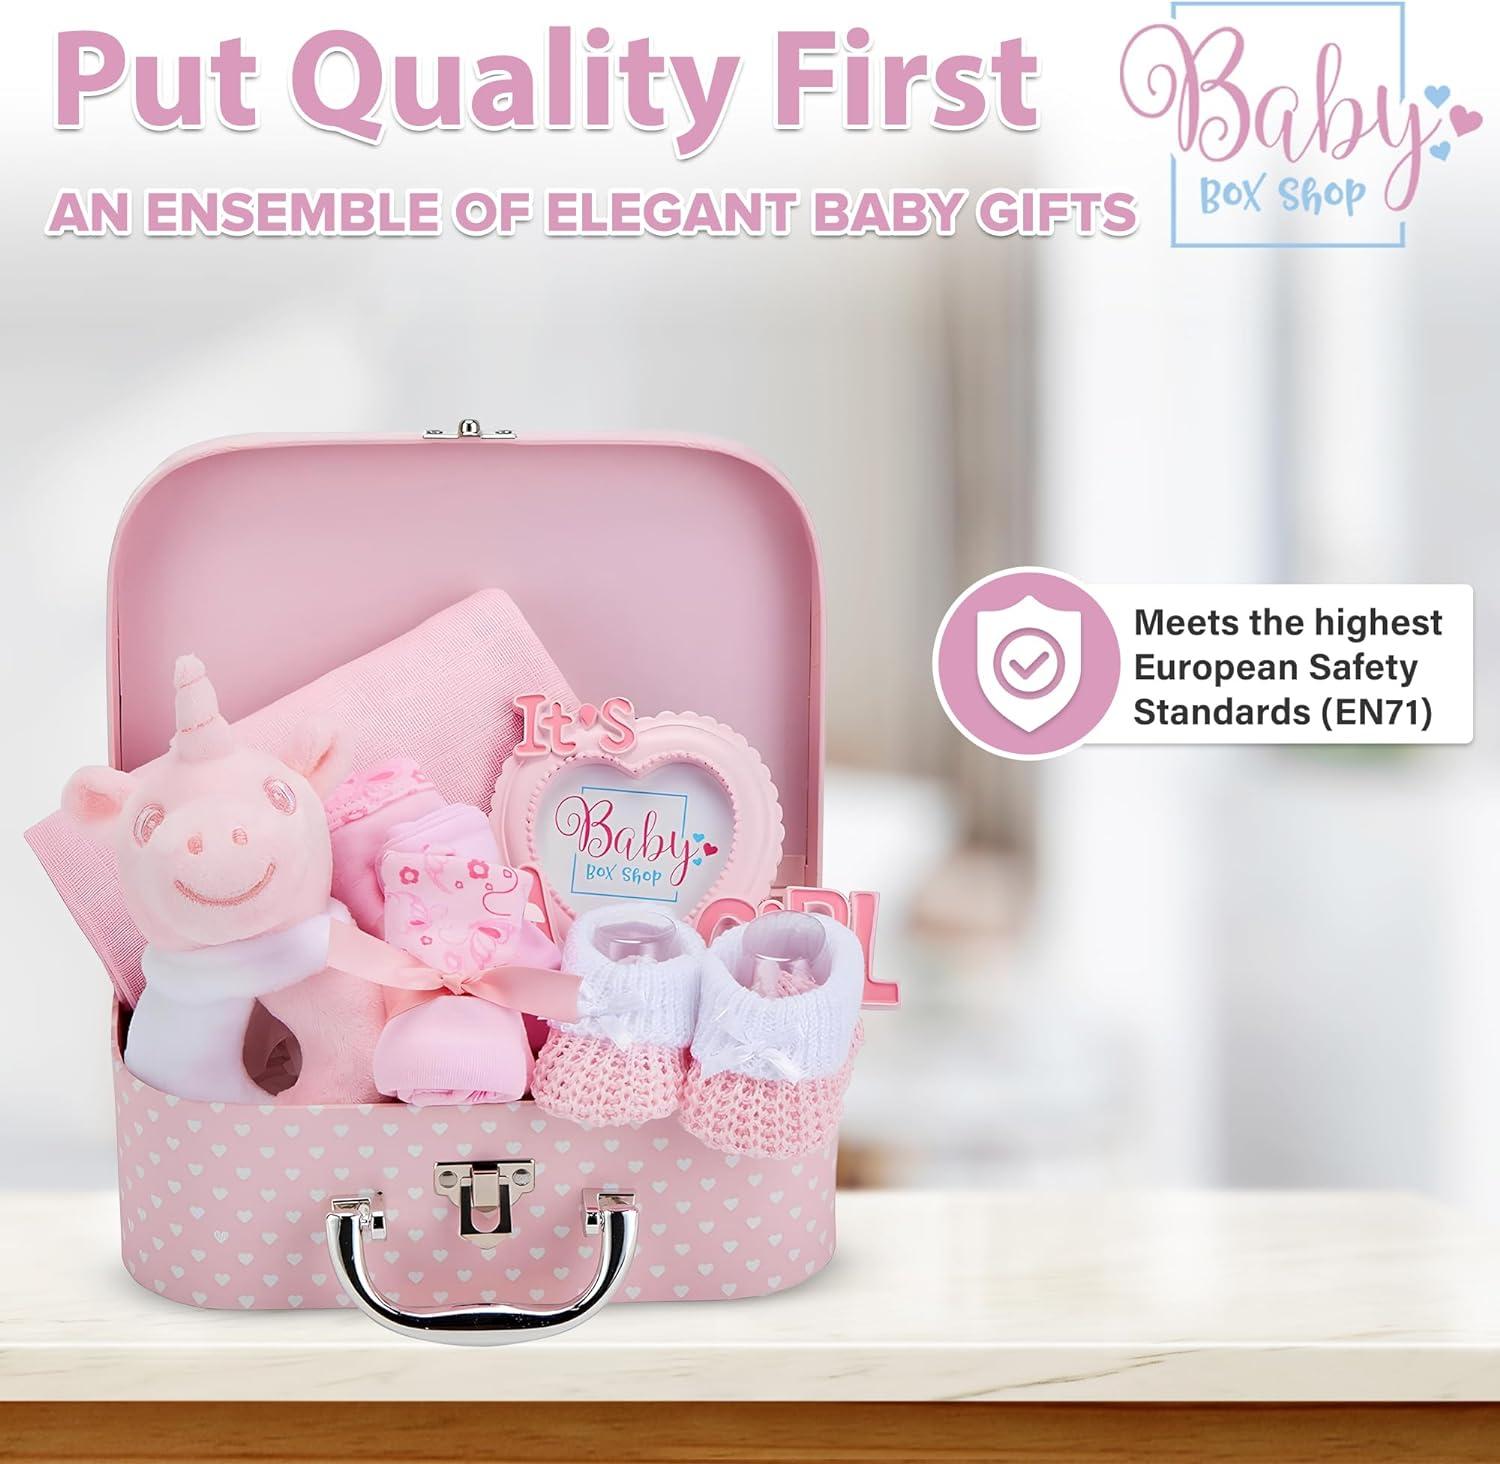 Buy Baby Girl Gift, Baby Gift Basket Girl, New Baby Gift, Newborn Baby Gift  Box, Mom and New Baby Gift Basket, Welcome New Baby, Newborn Gift Online in  India - Etsy